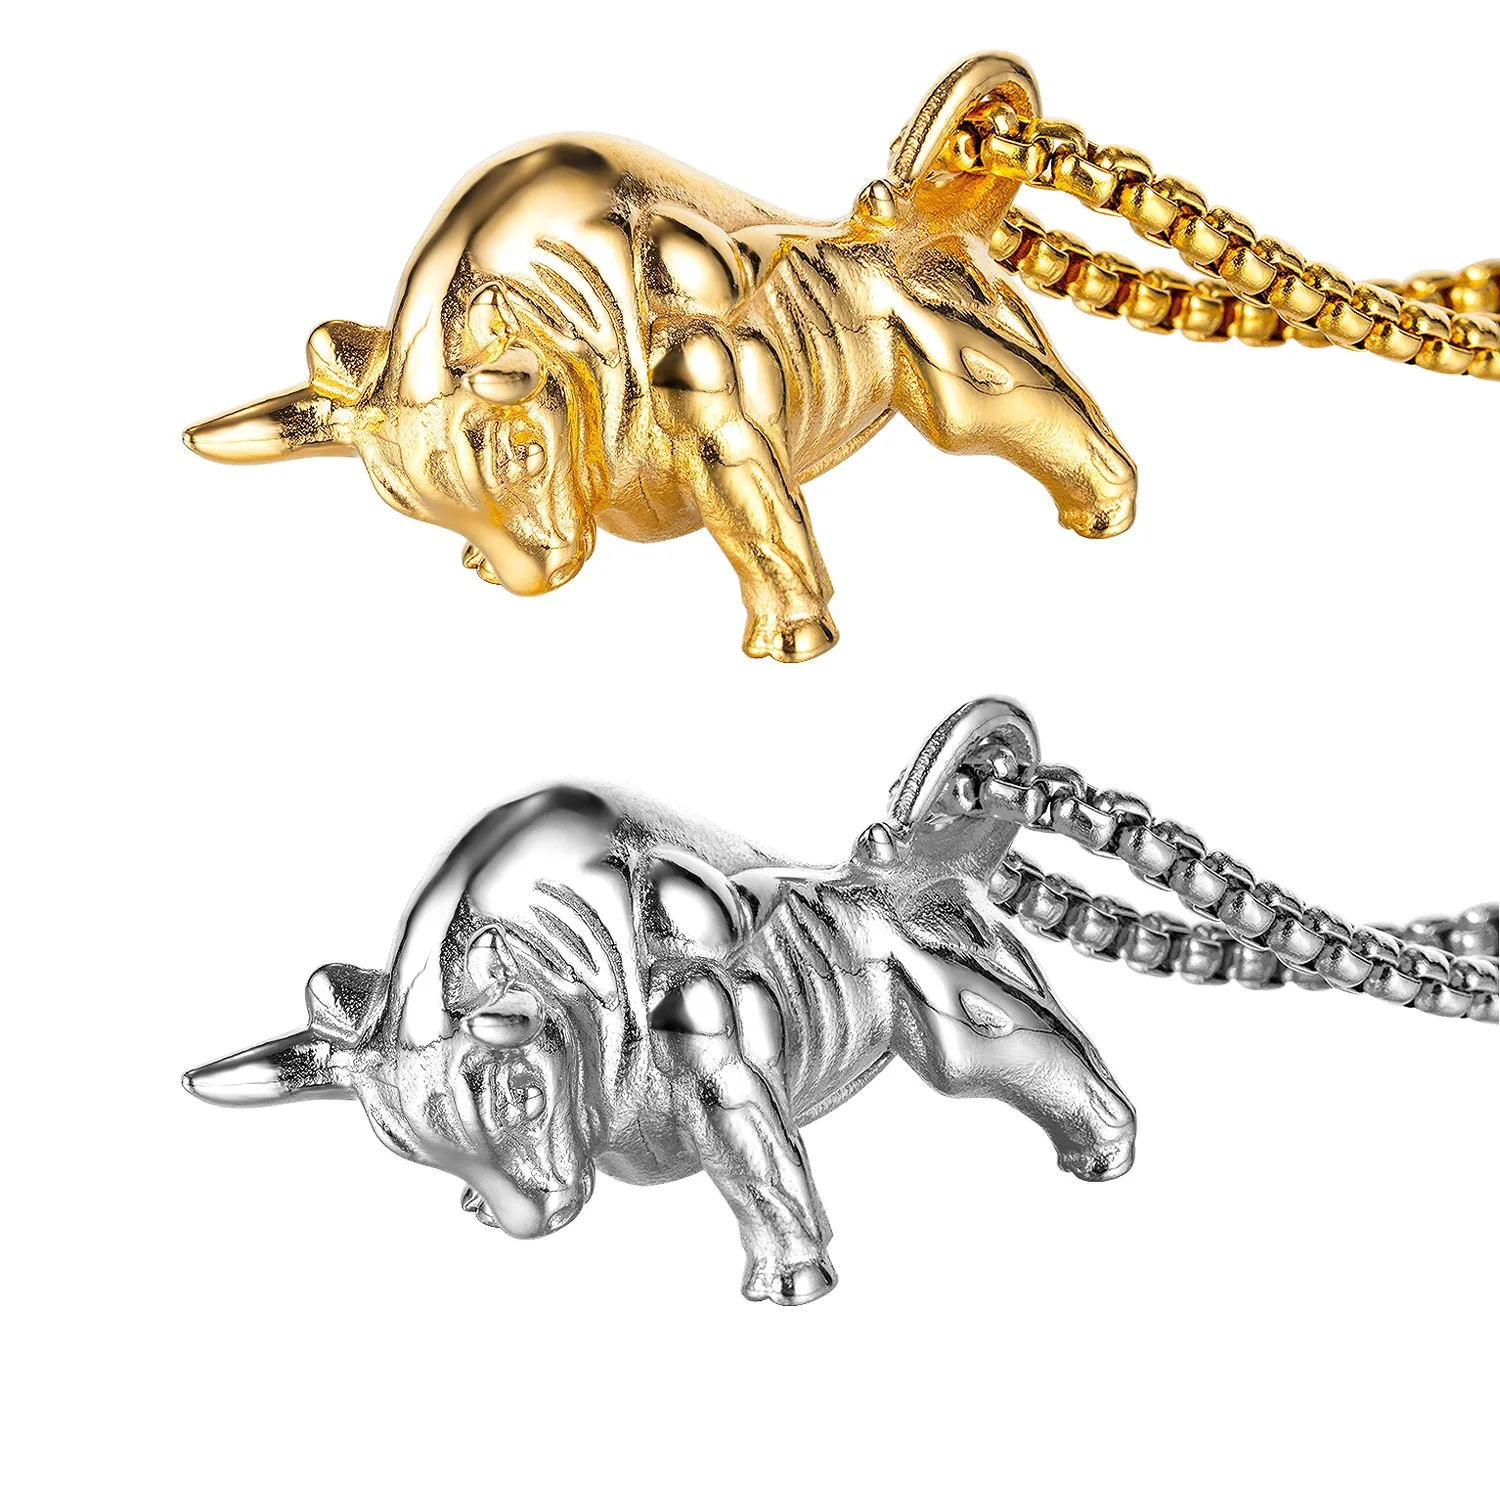 Vintage Paslanmaz Çelik Altın Renk Boğa Kolye Zincir Kolye Erkekler için Sığır Hayvan Erkek Takı Hediye